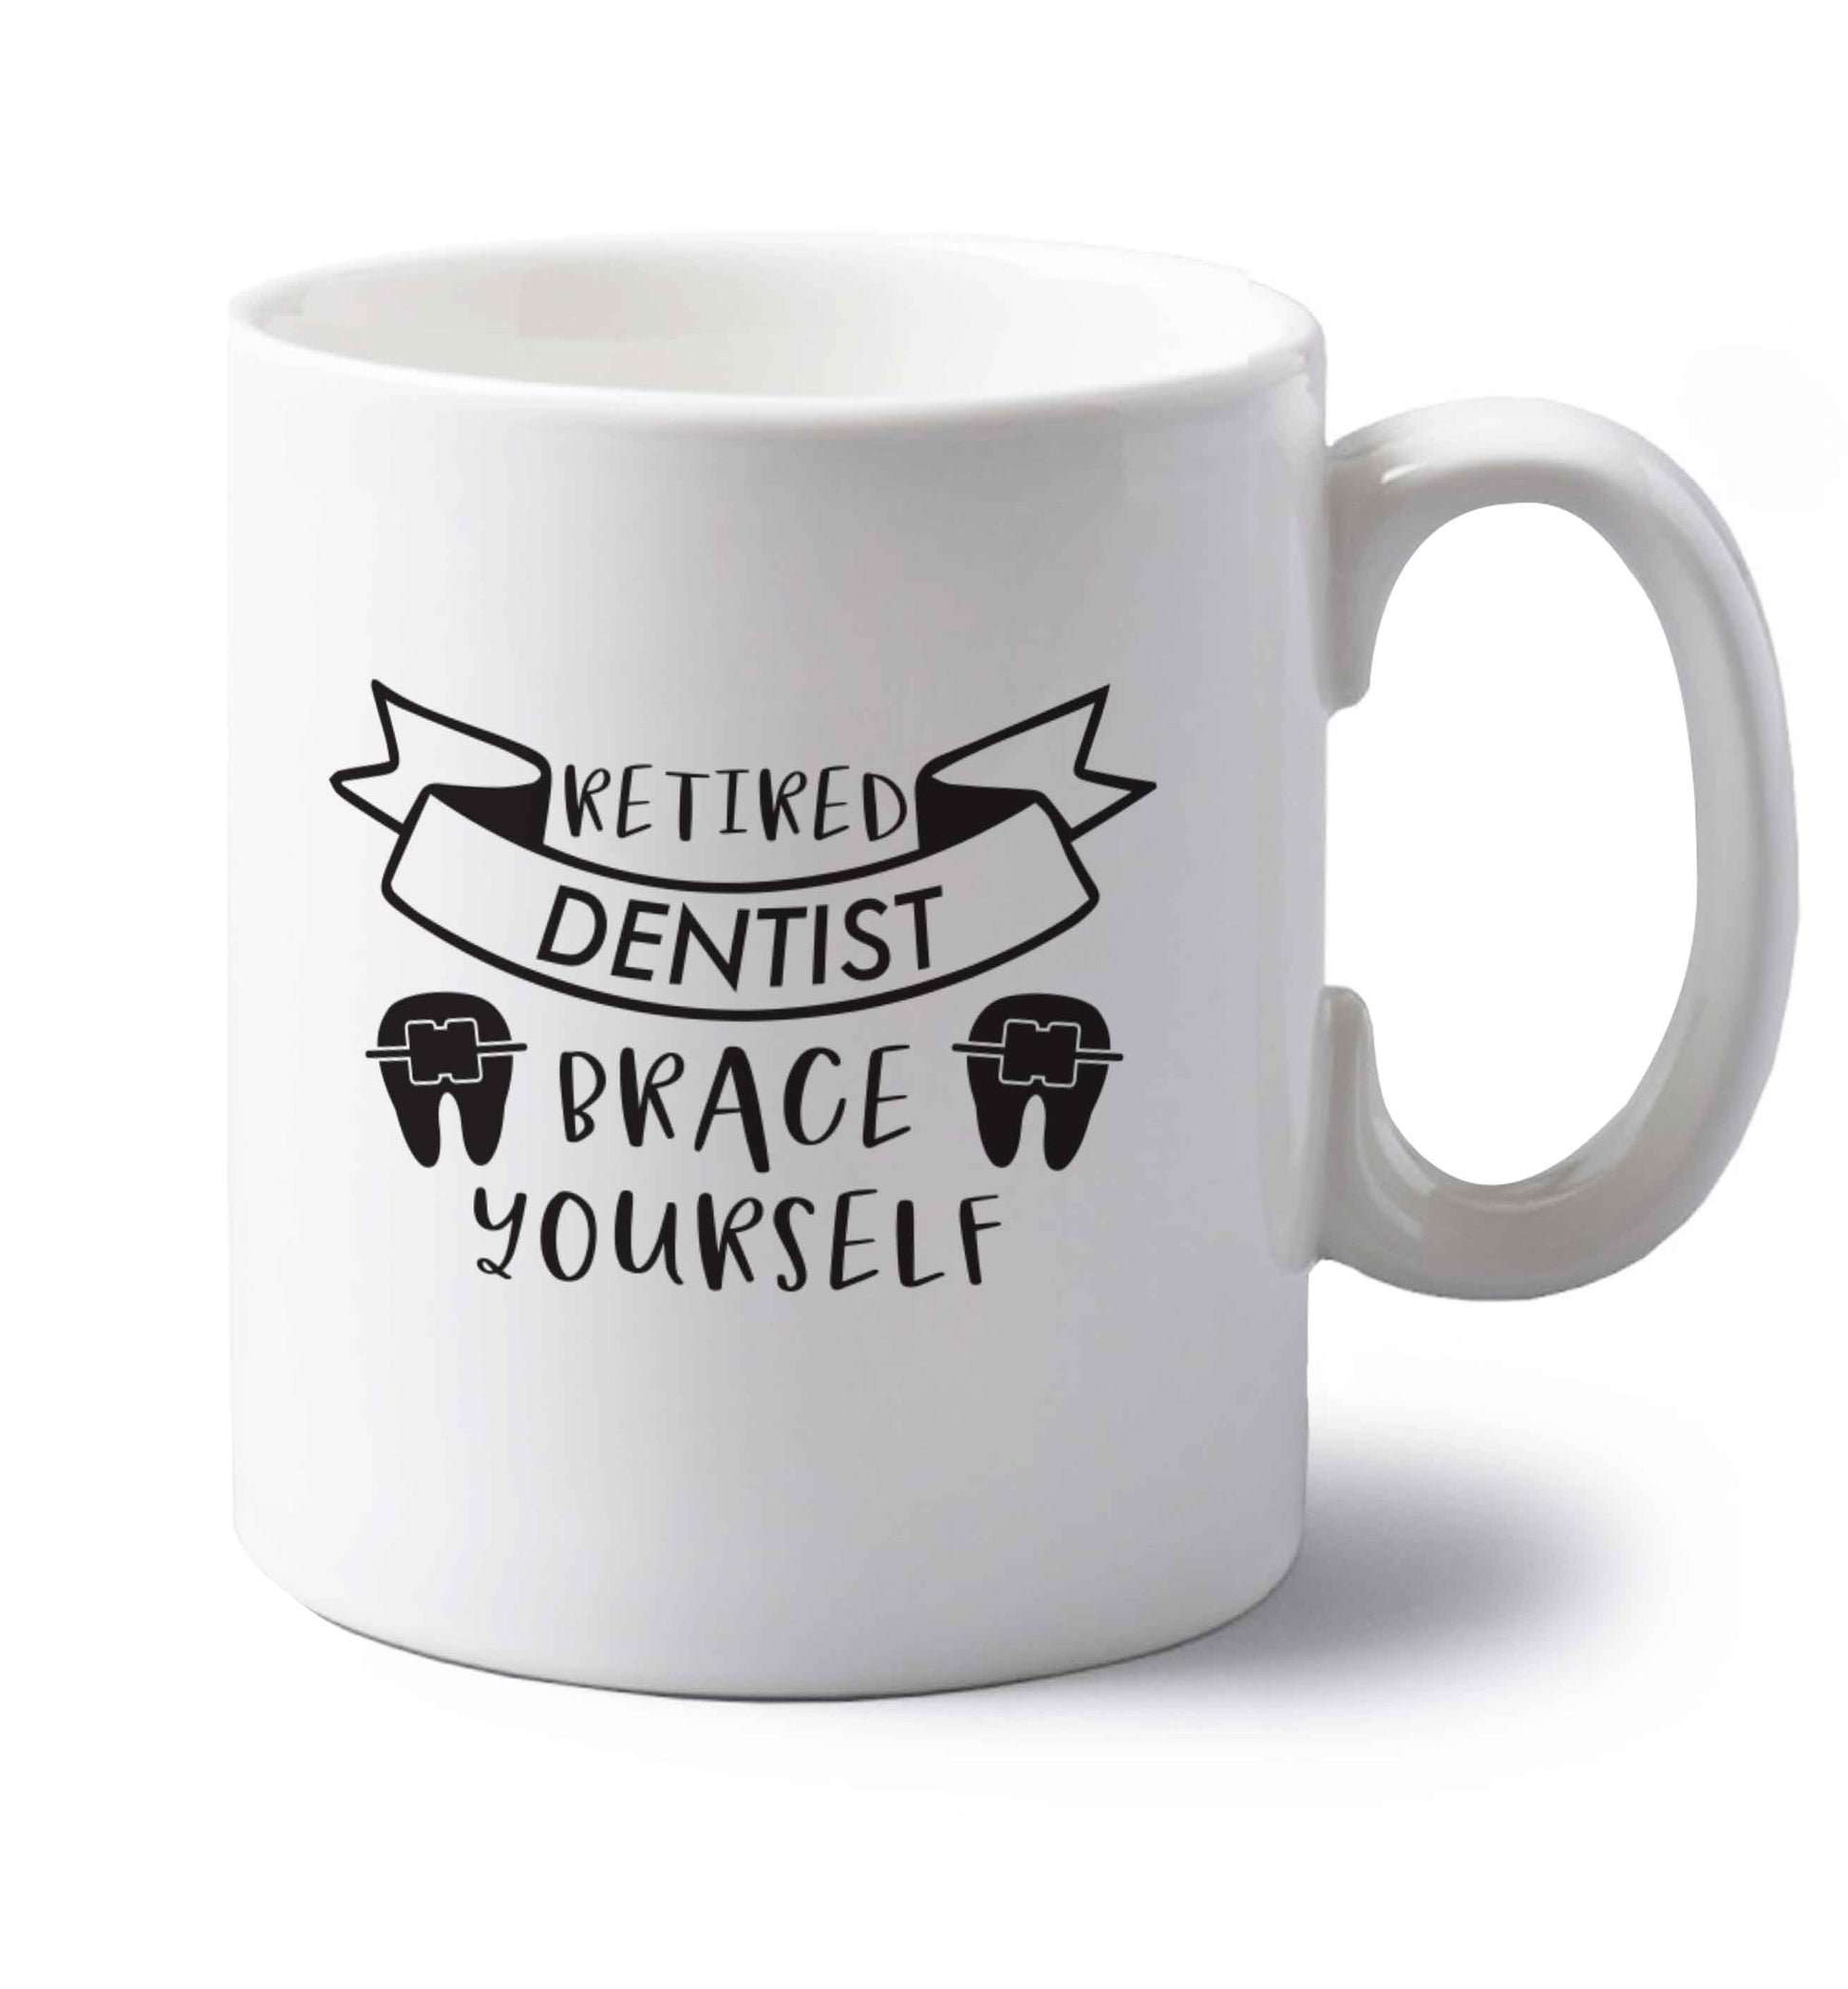 Retired dentist brace yourself left handed white ceramic mug 